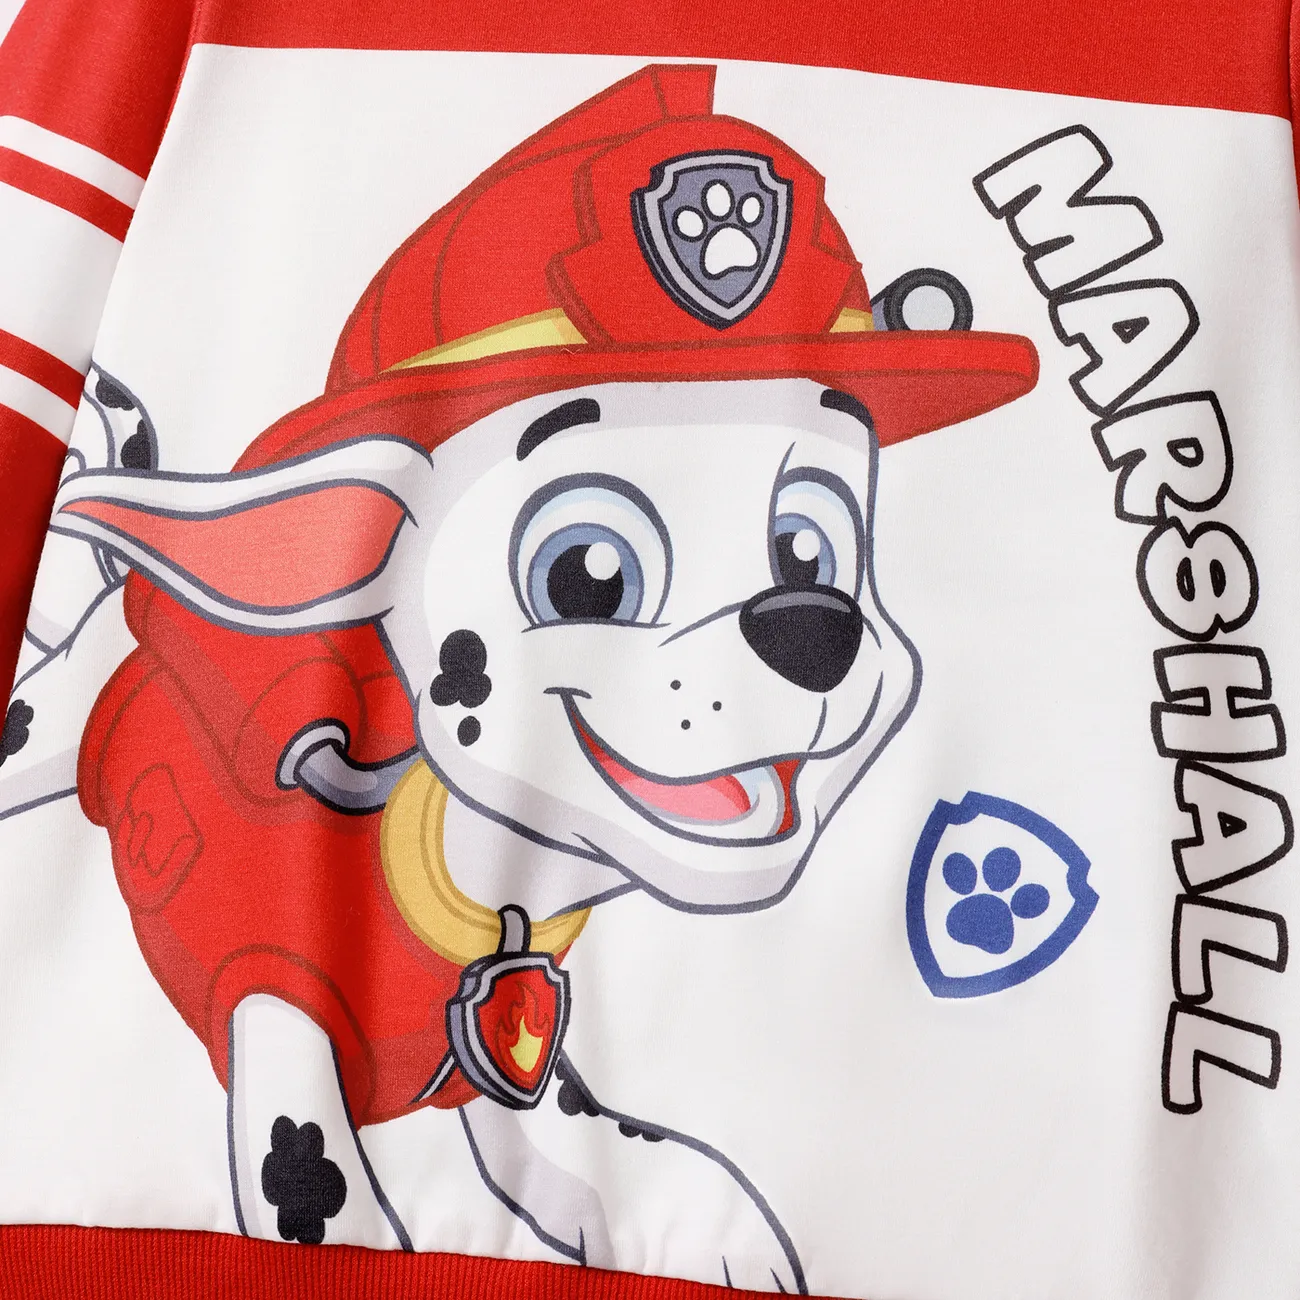 Helfer auf vier Pfoten Kleinkinder Unisex Kindlich Hund Sweatshirts rot big image 1